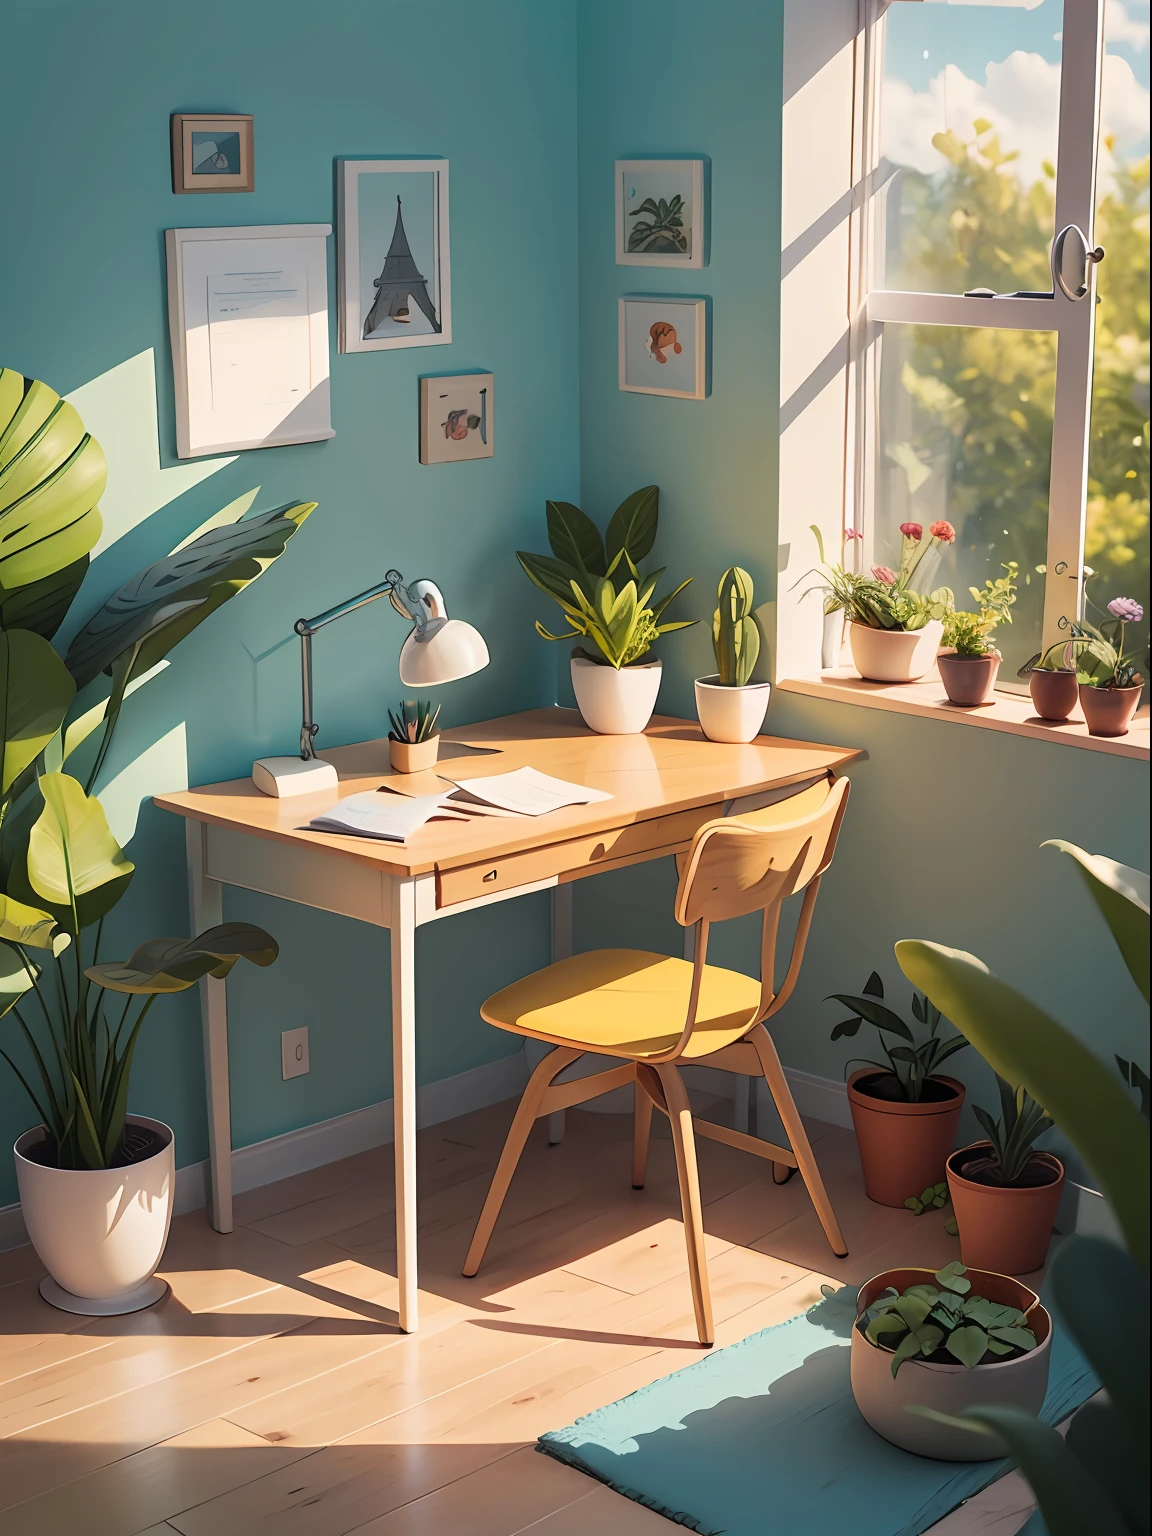 Ilustración de escritorio dibujado en estilo de dibujos animados. Añade elementos naturales, Como plantas y flores, Y utilice una paleta de colores suaves para crear una atmósfera relajante..